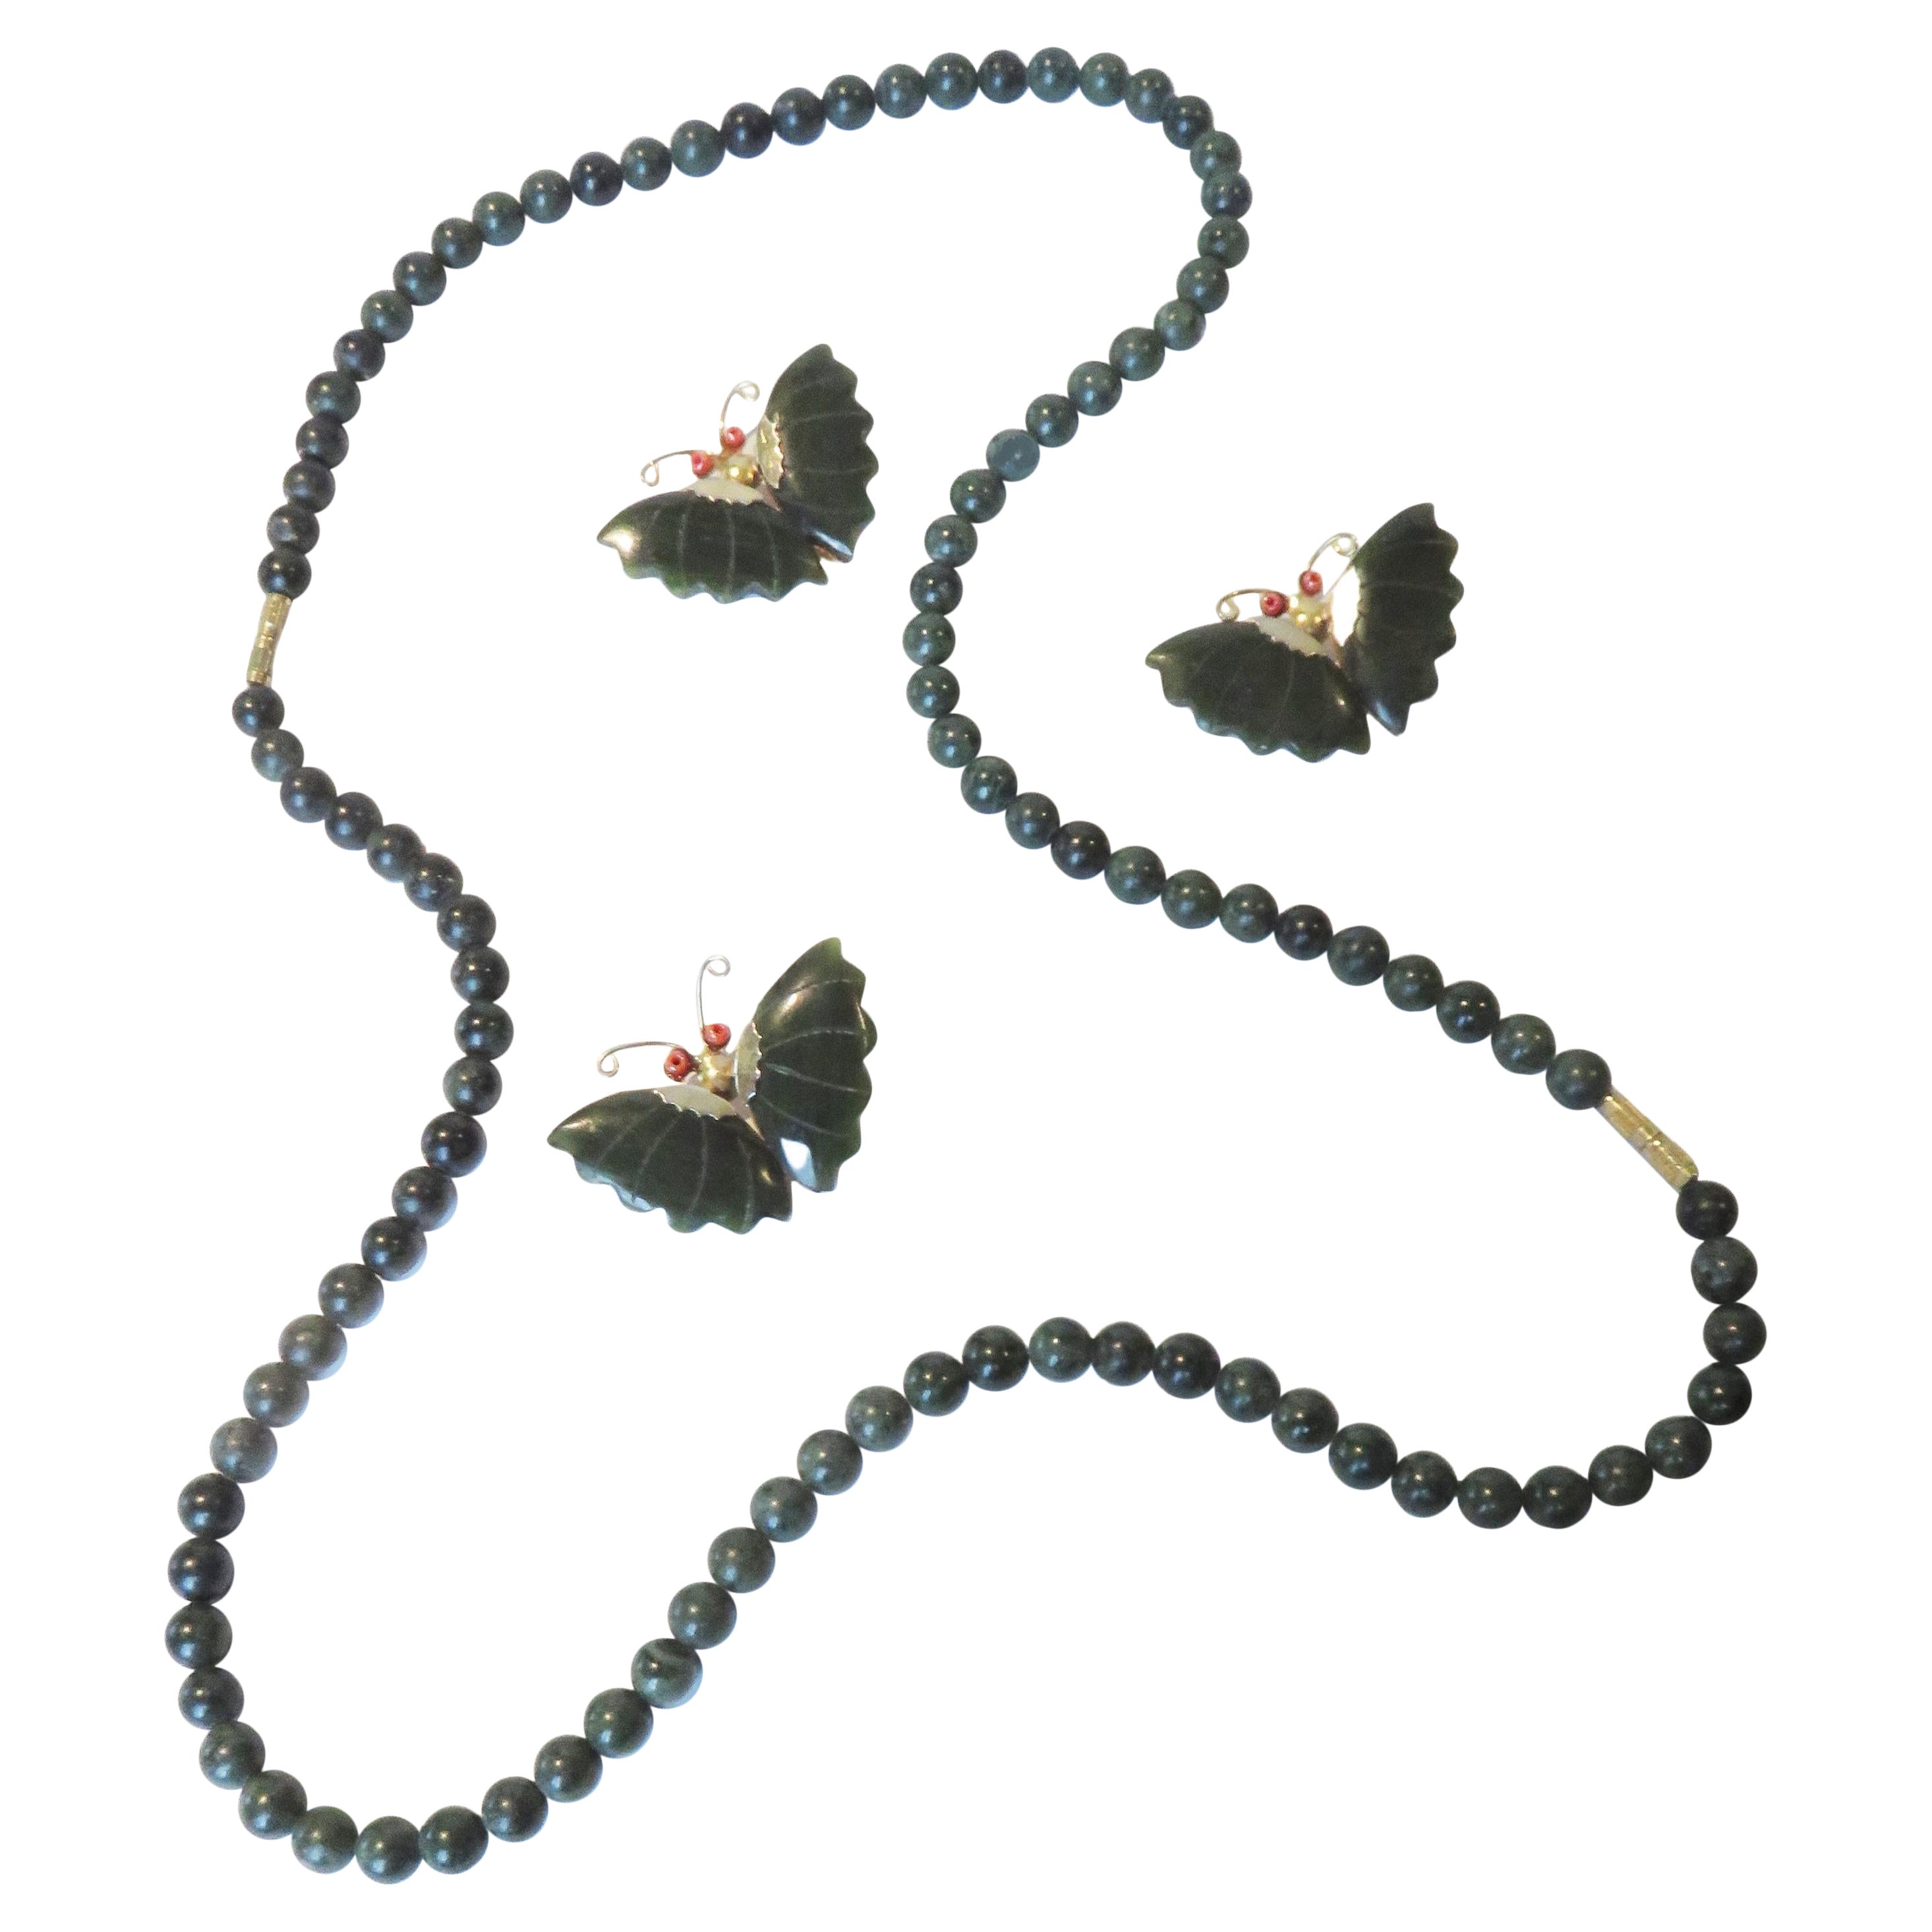 Jade-Halskette und 3 Schmetterlingsnadeln aus Jade